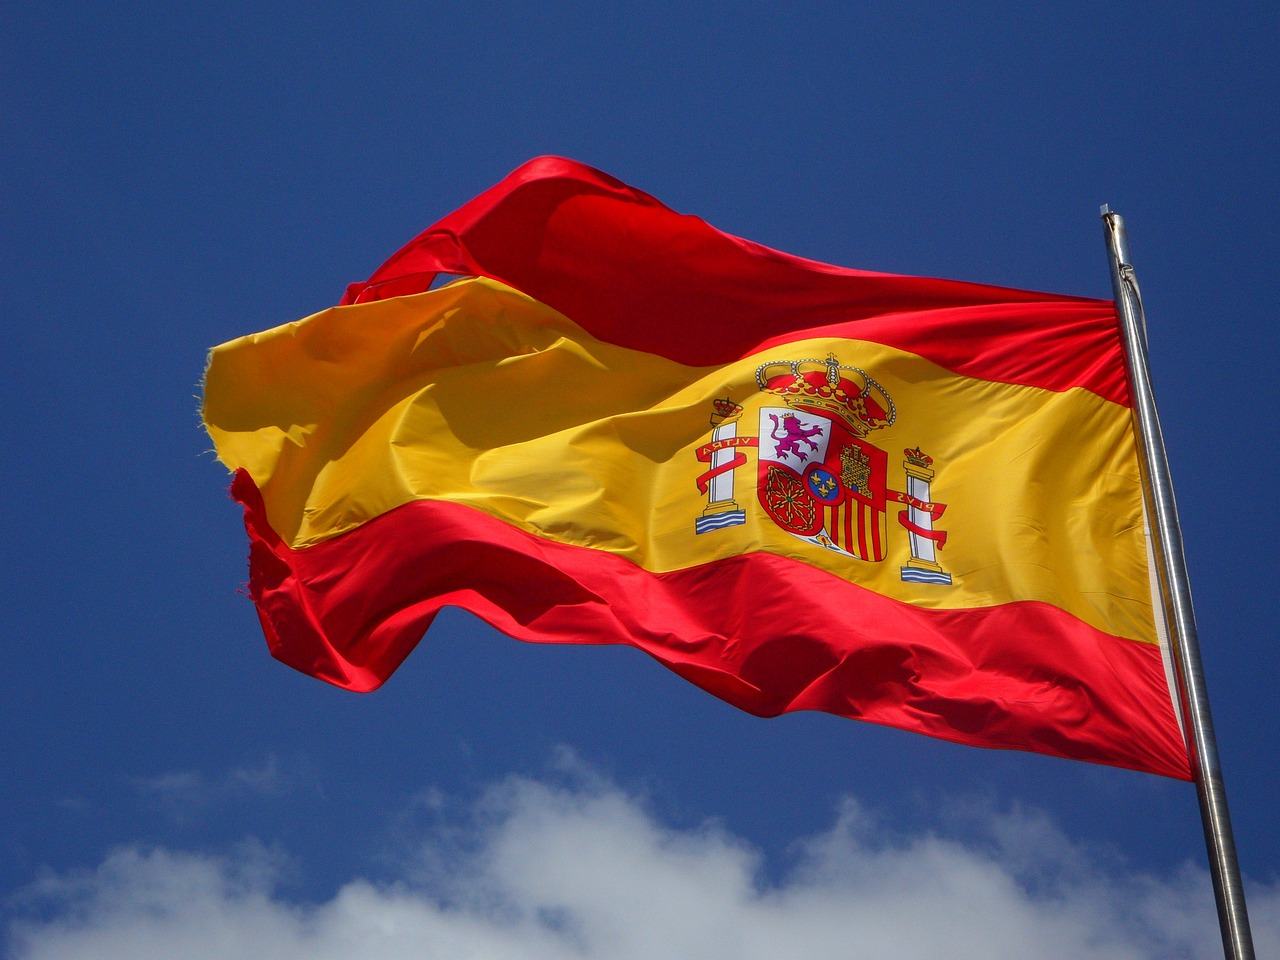 Spanish Telegram Group Links Joining